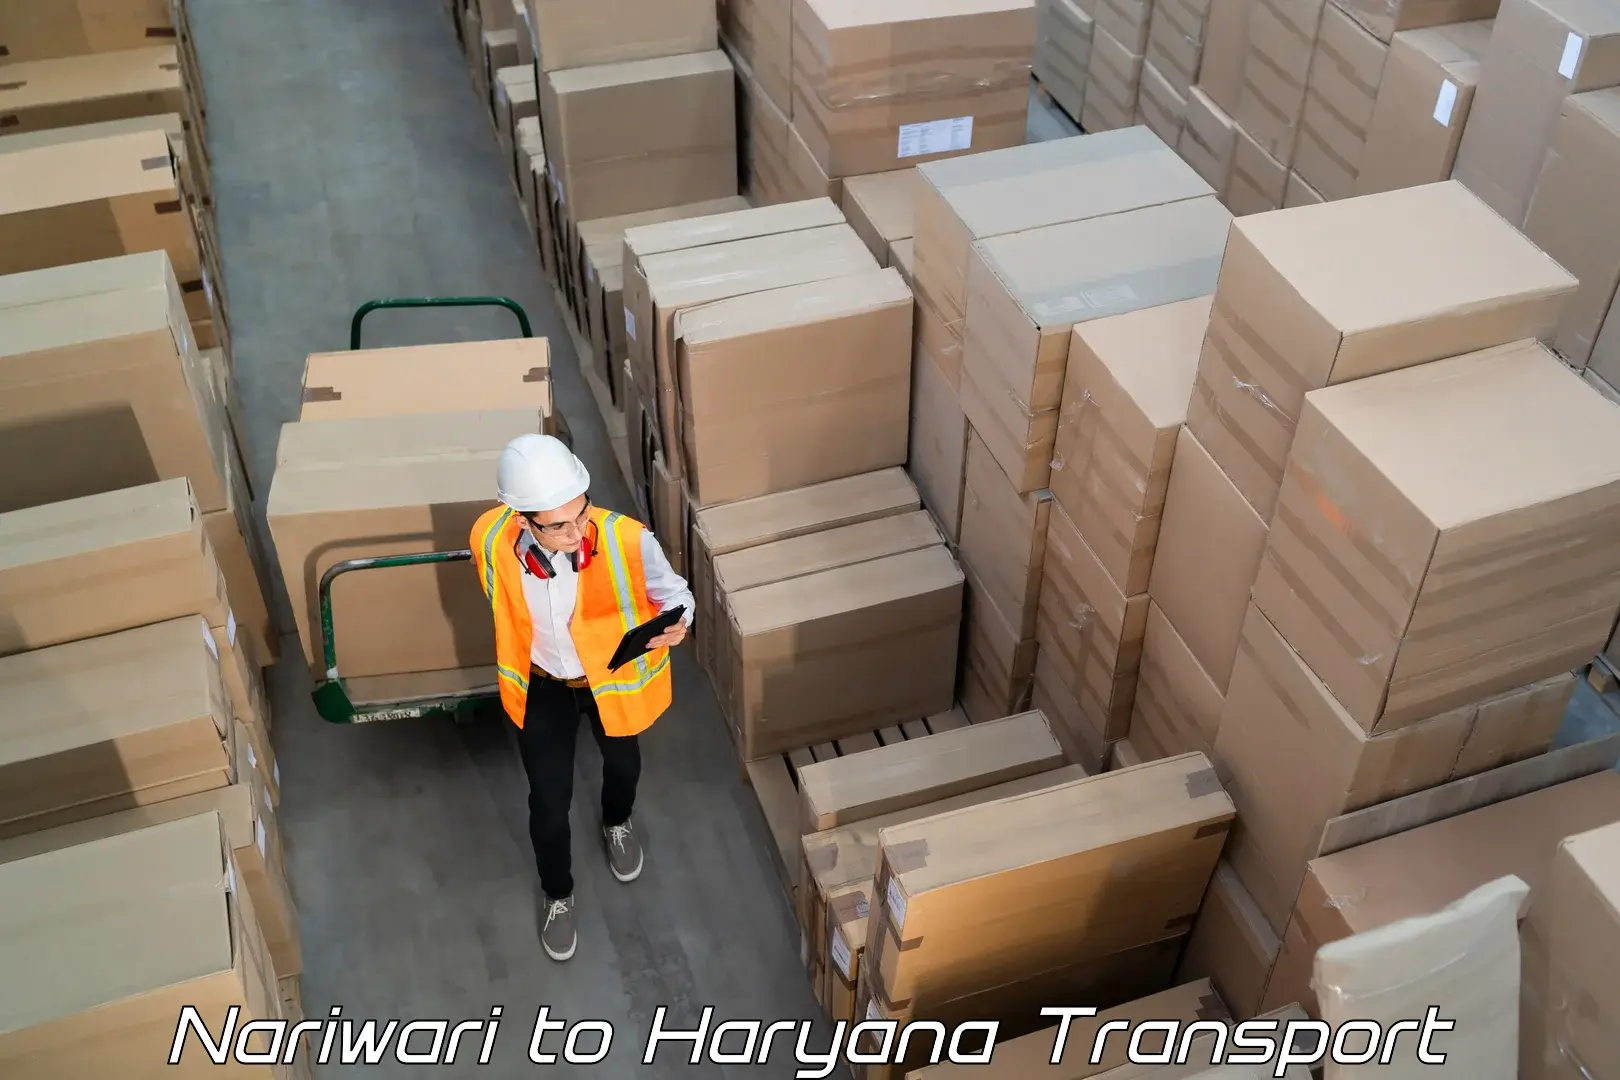 Cargo transportation services Nariwari to Narwana